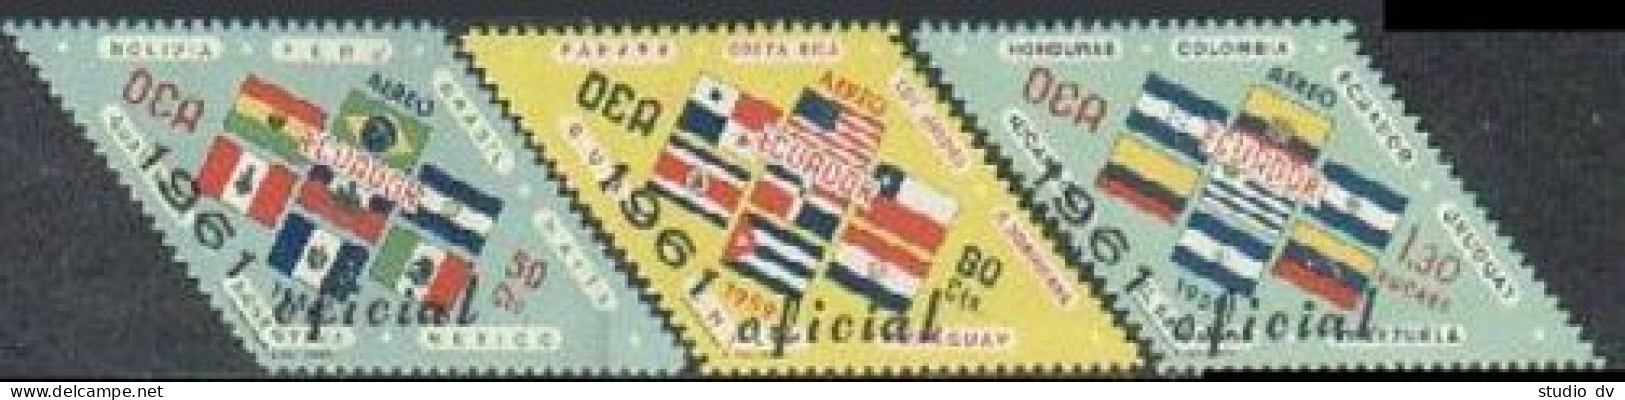 Ecuador CO19-CO21, MNH. Mi D195-D1970. Official 1964. OAS-Flags. Official 1961. - Ecuador